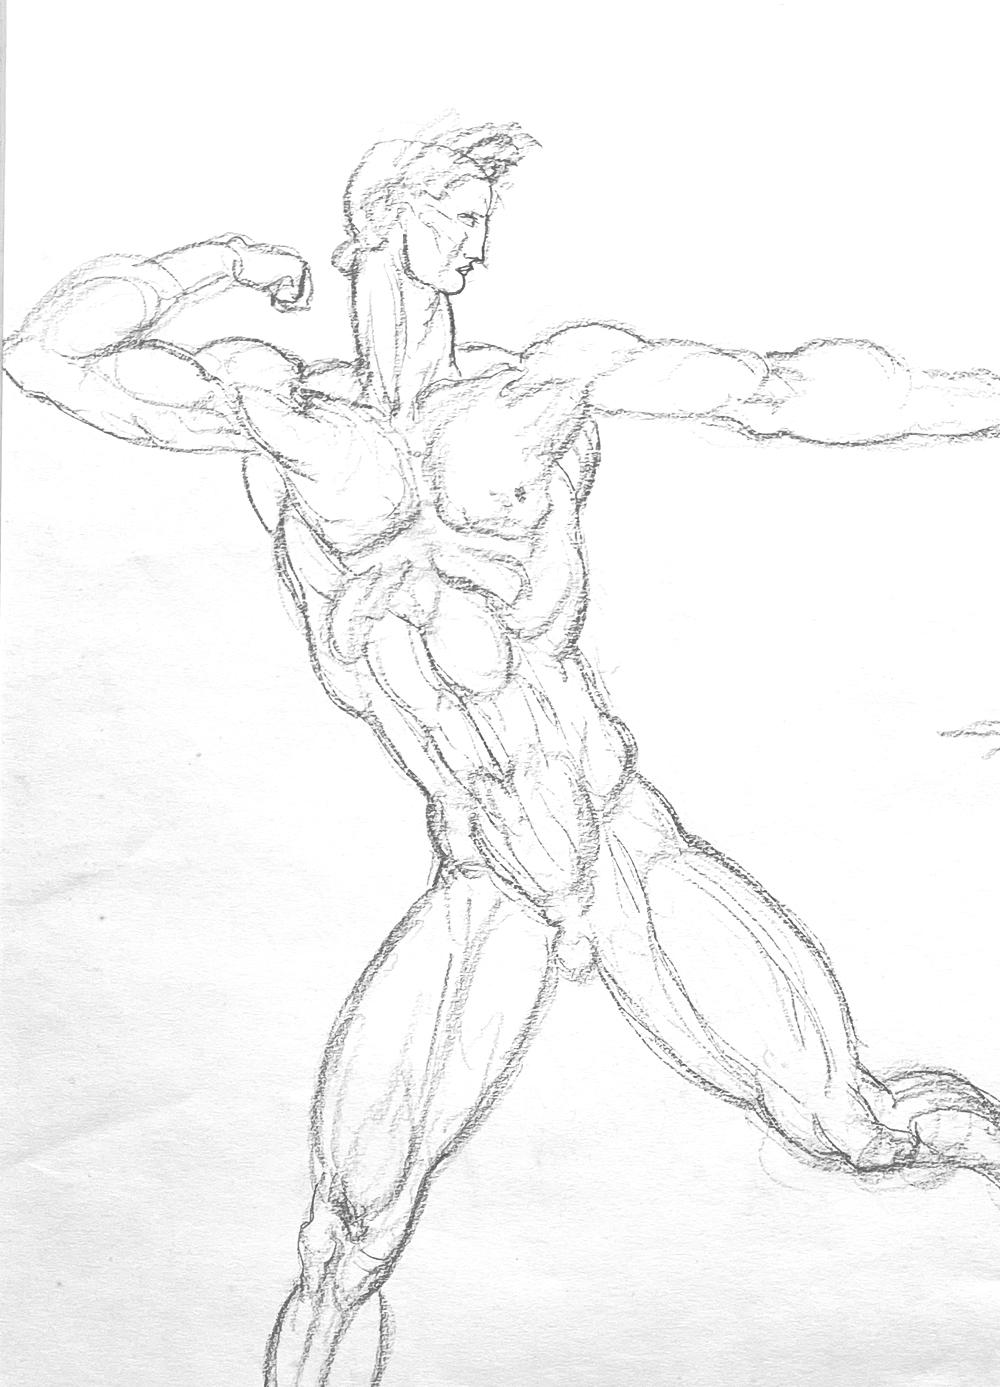 Créé au début de la carrière de De Lue, probablement lorsqu'il travaillait dans le studio new-yorkais de Bryant Baker, ce beau dessin Art déco représente un homme nu dans une pose d'archer tendu, accompagné d'une femme nue debout. Parce qu'il ne